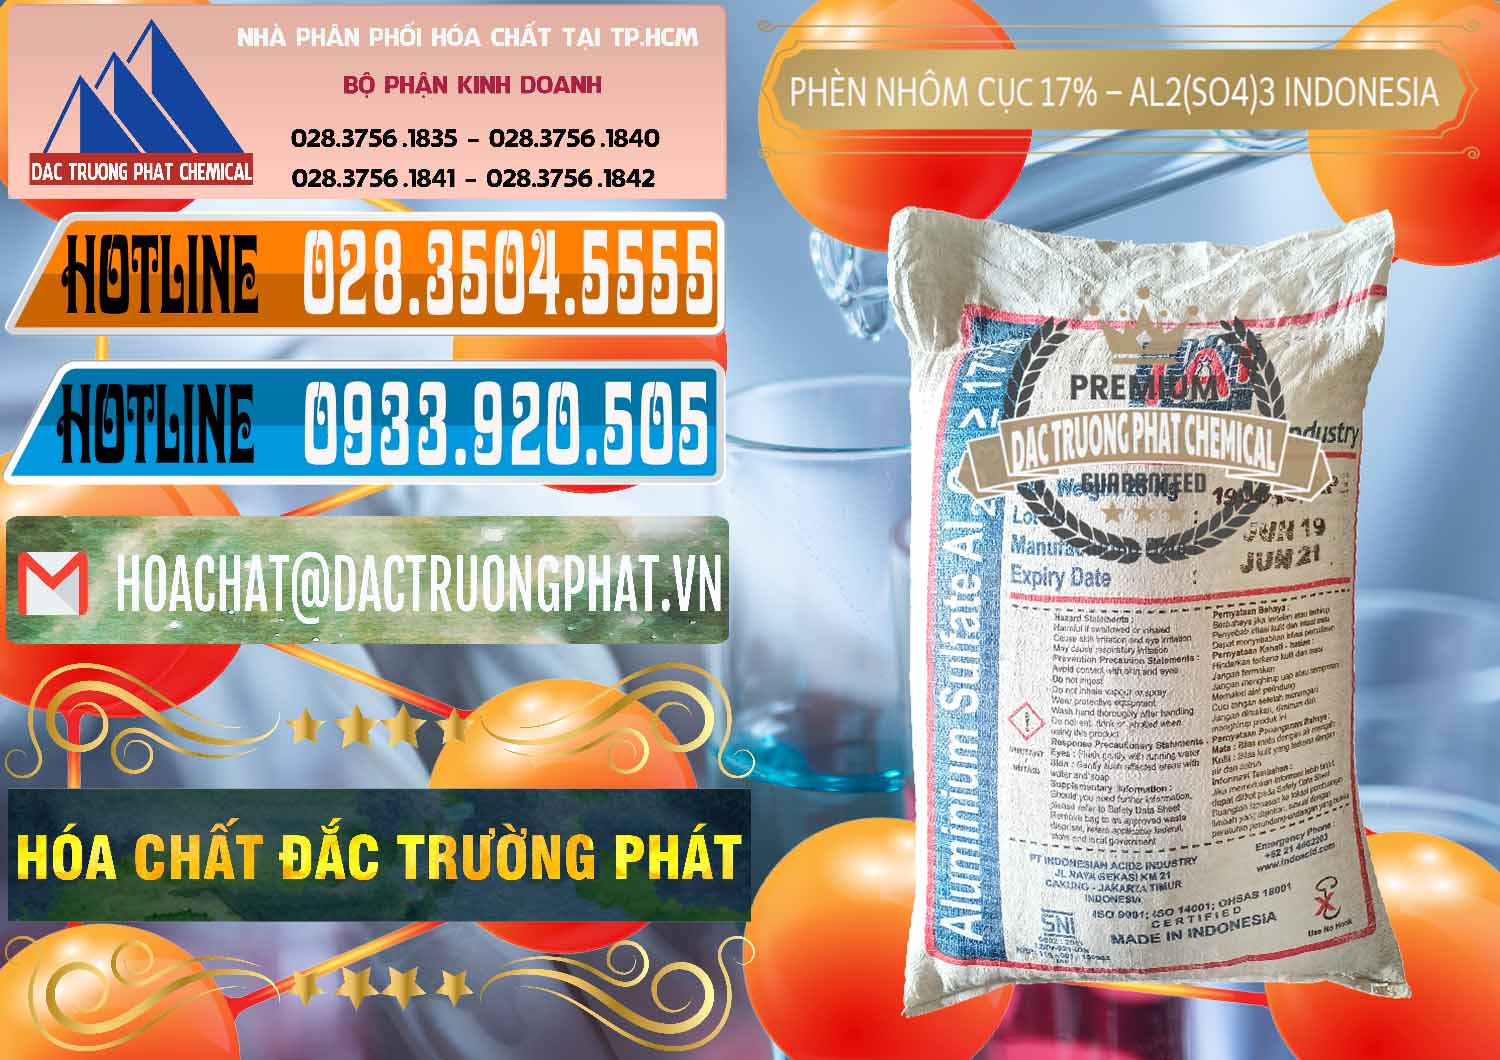 Cty cung ứng và bán Phèn Nhôm Cục - Al2(SO4)3 17% bao 25kg Indonesia - 0115 - Chuyên cung cấp & kinh doanh hóa chất tại TP.HCM - stmp.net